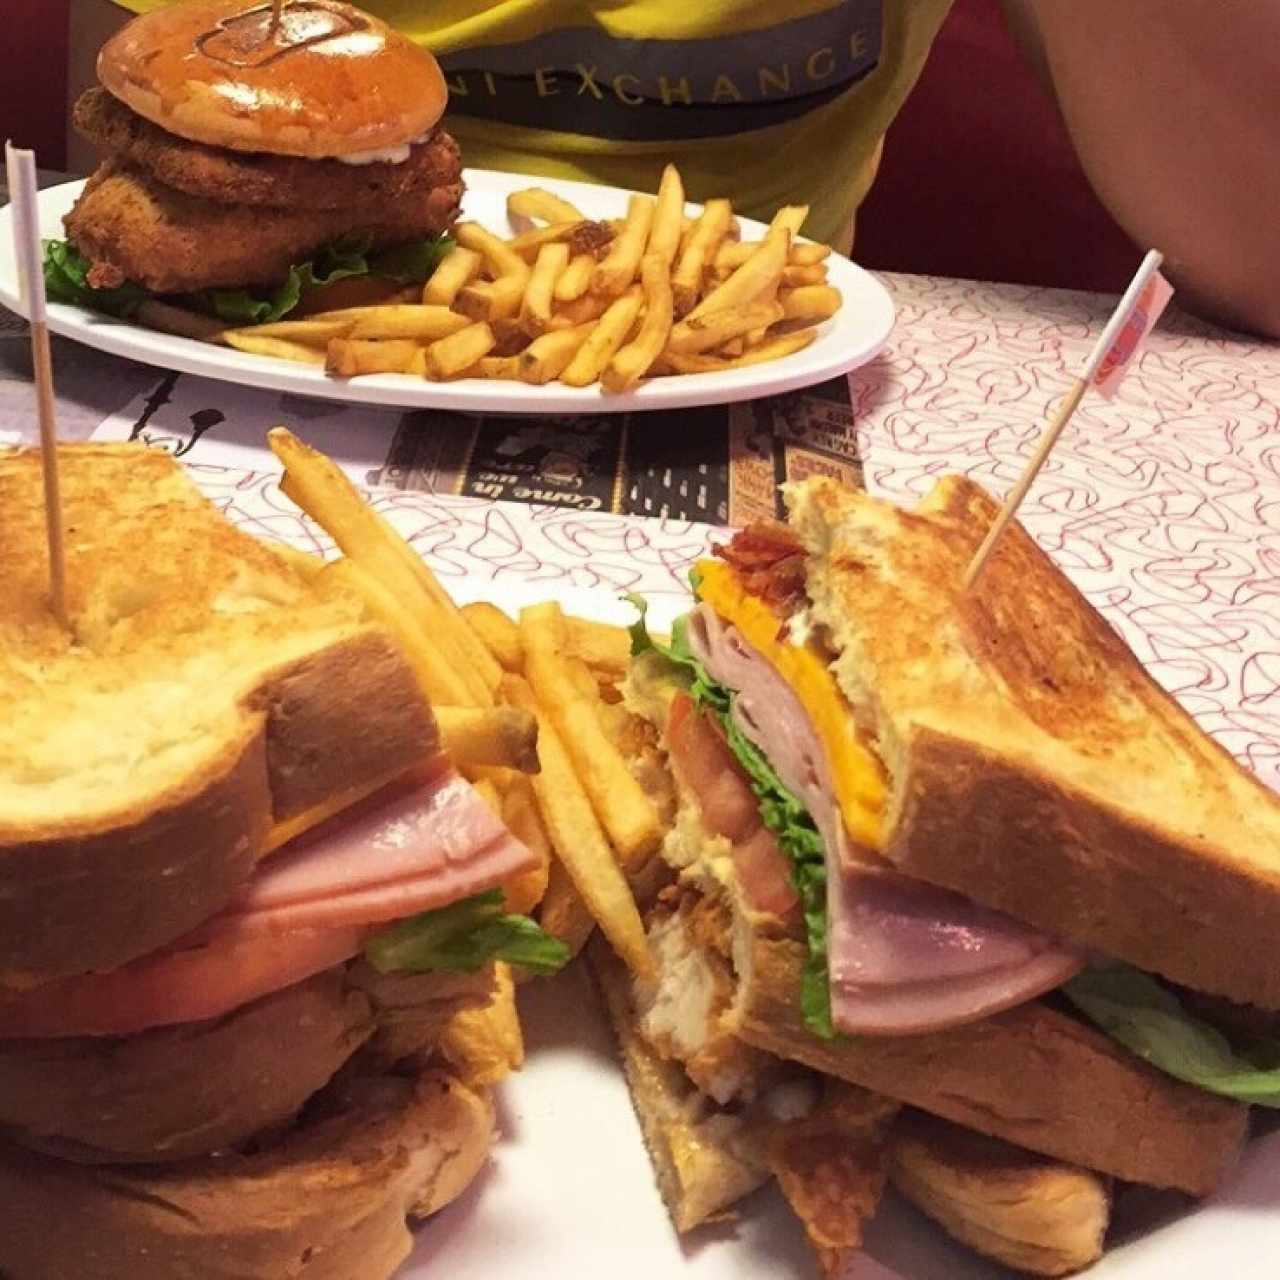 rd's club sandwich